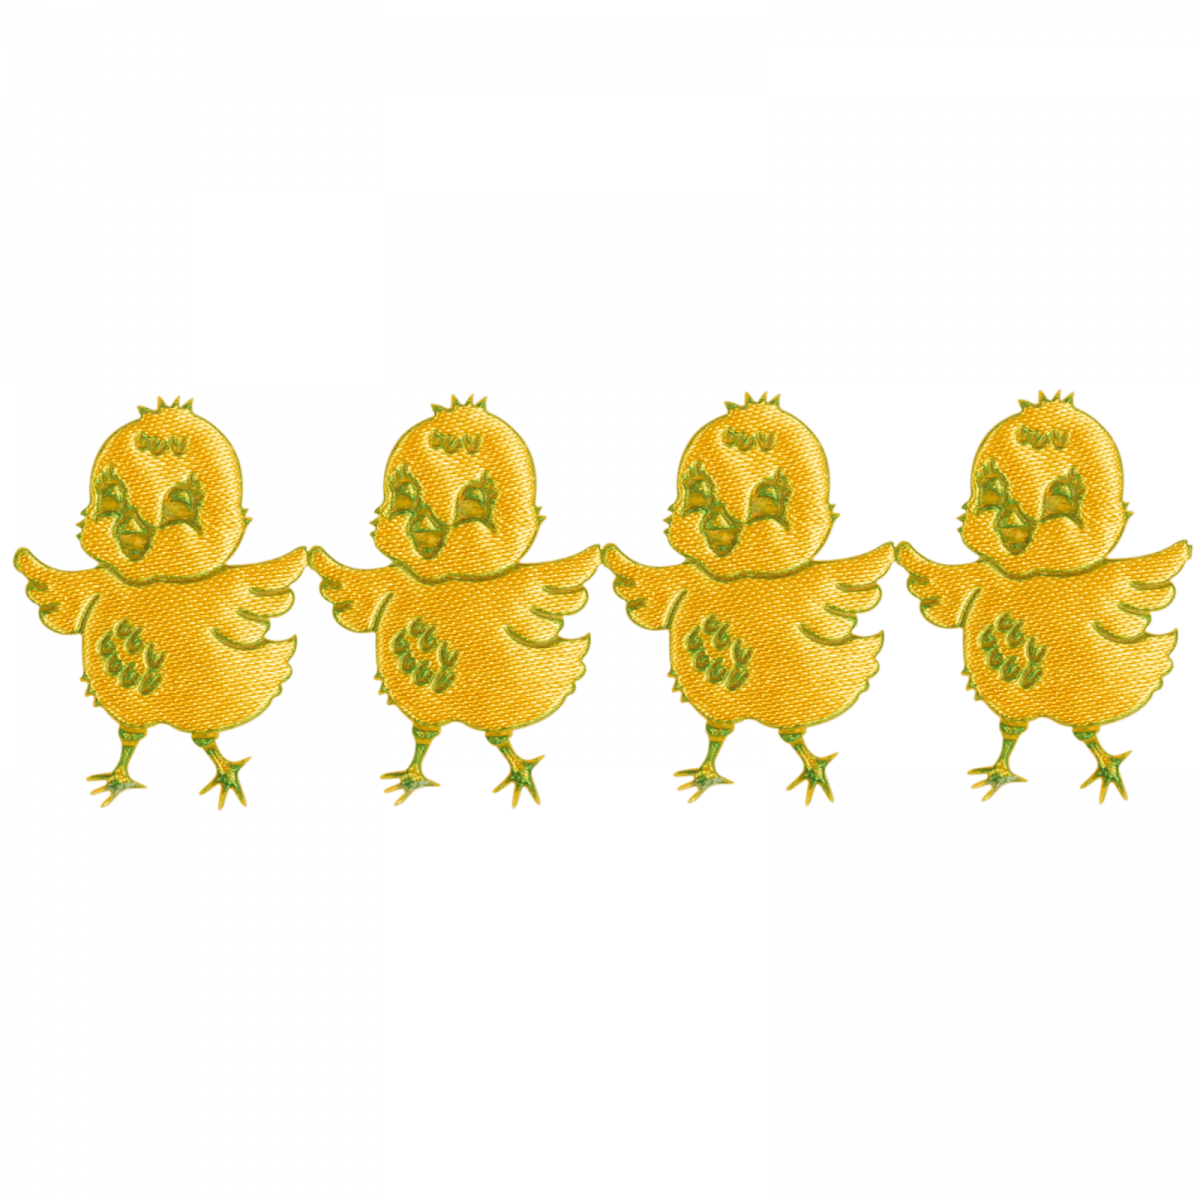 aplikacja z materiału żółty kurczak w taśmie z zielonym konturem